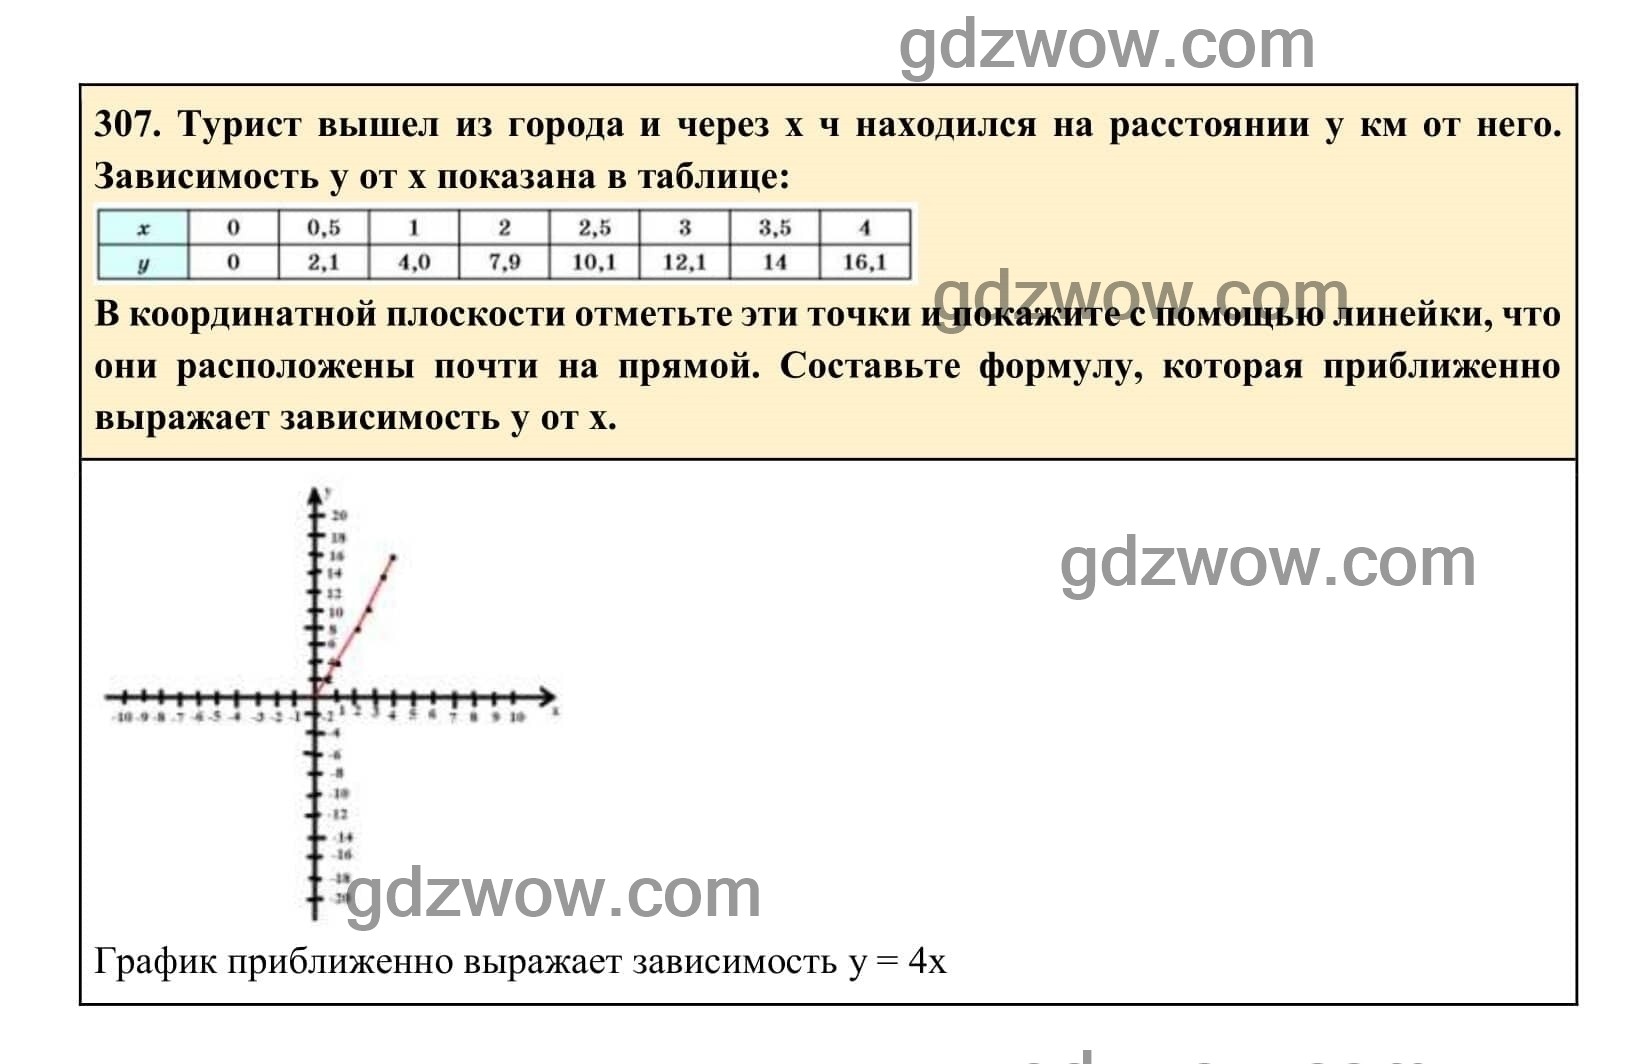 Упражнение 307 - ГДЗ по Алгебре 7 класс Учебник Макарычев (решебник) - GDZwow